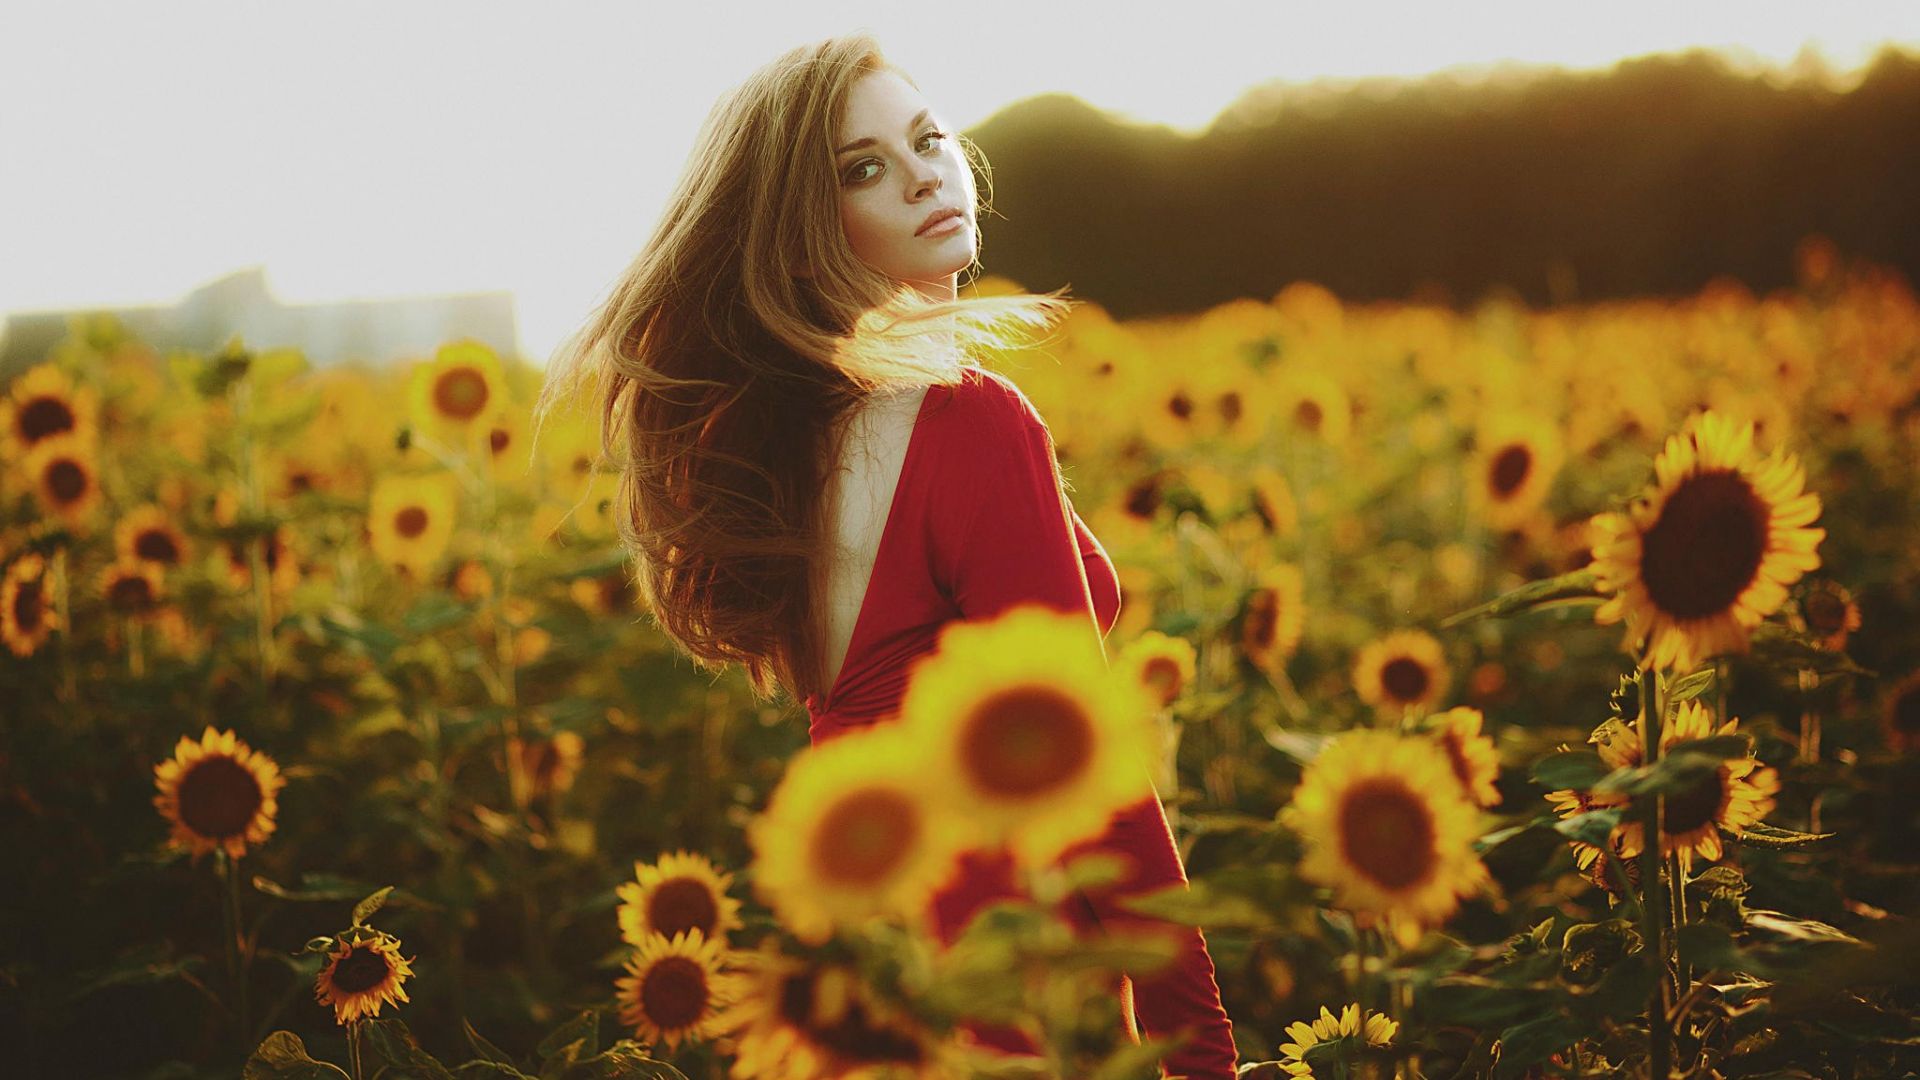 Wallpaper Cute girl in sunflower field